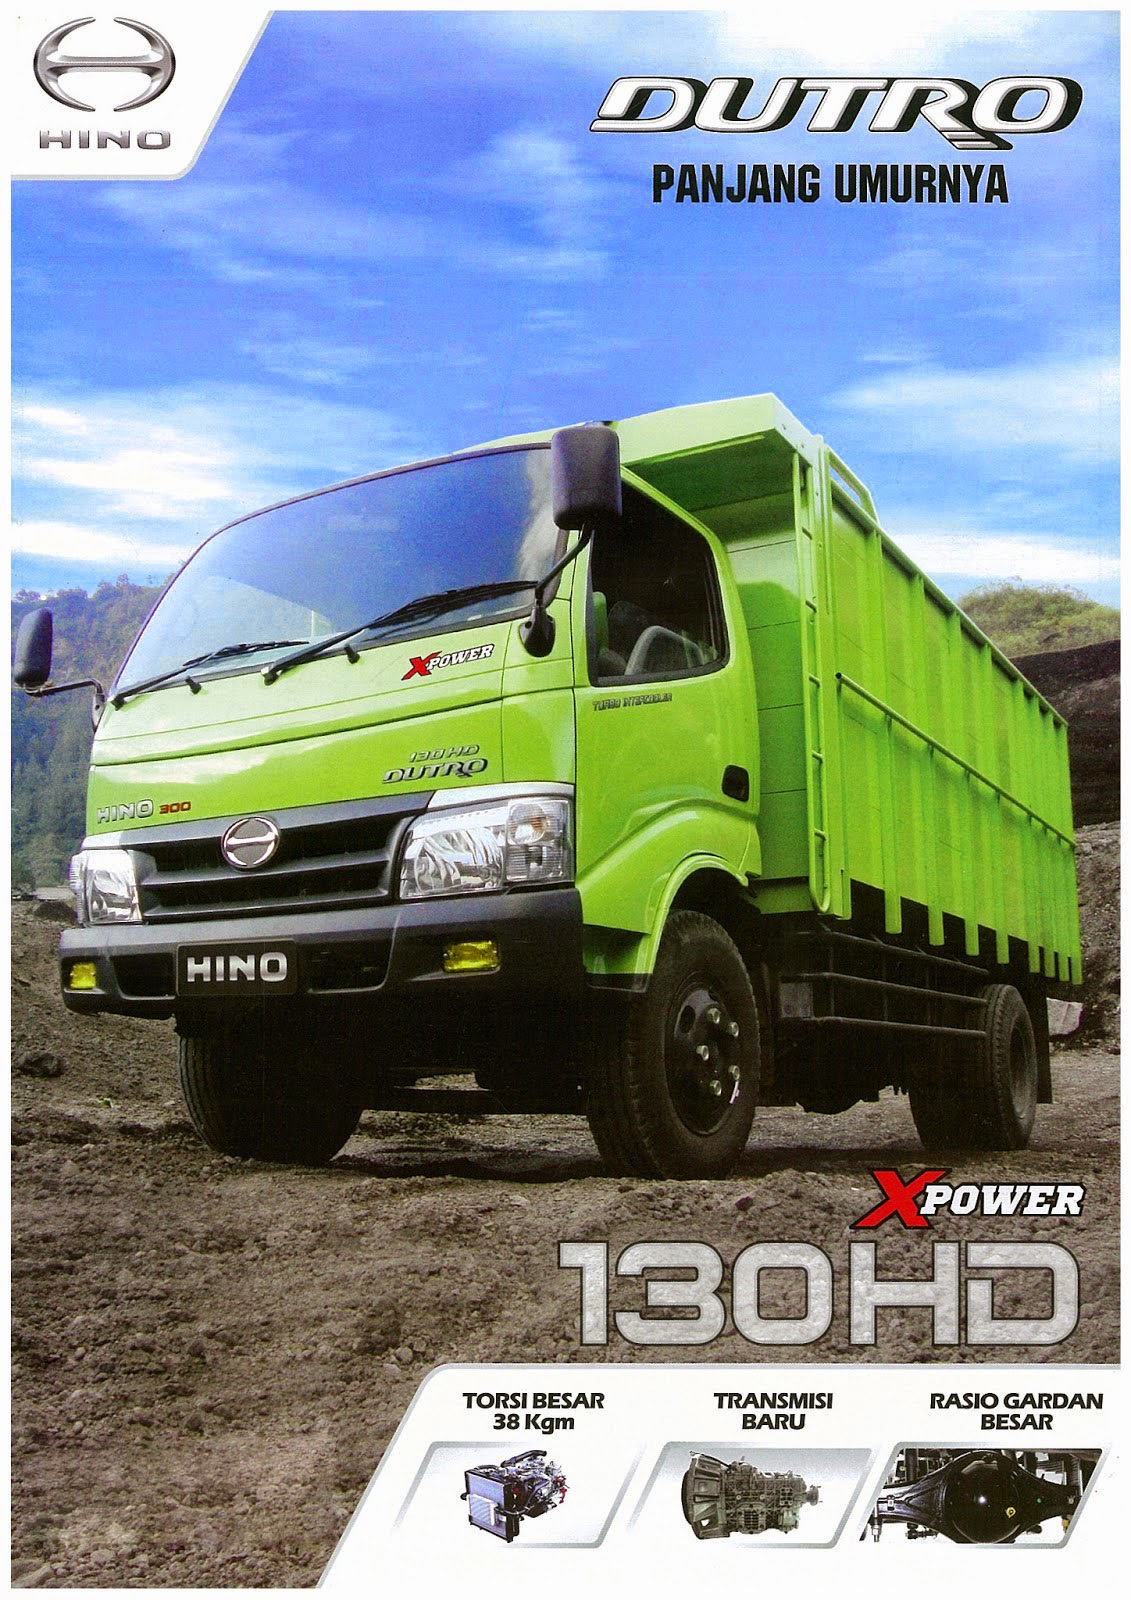  HINO DUTRO 130 HD  X POWER